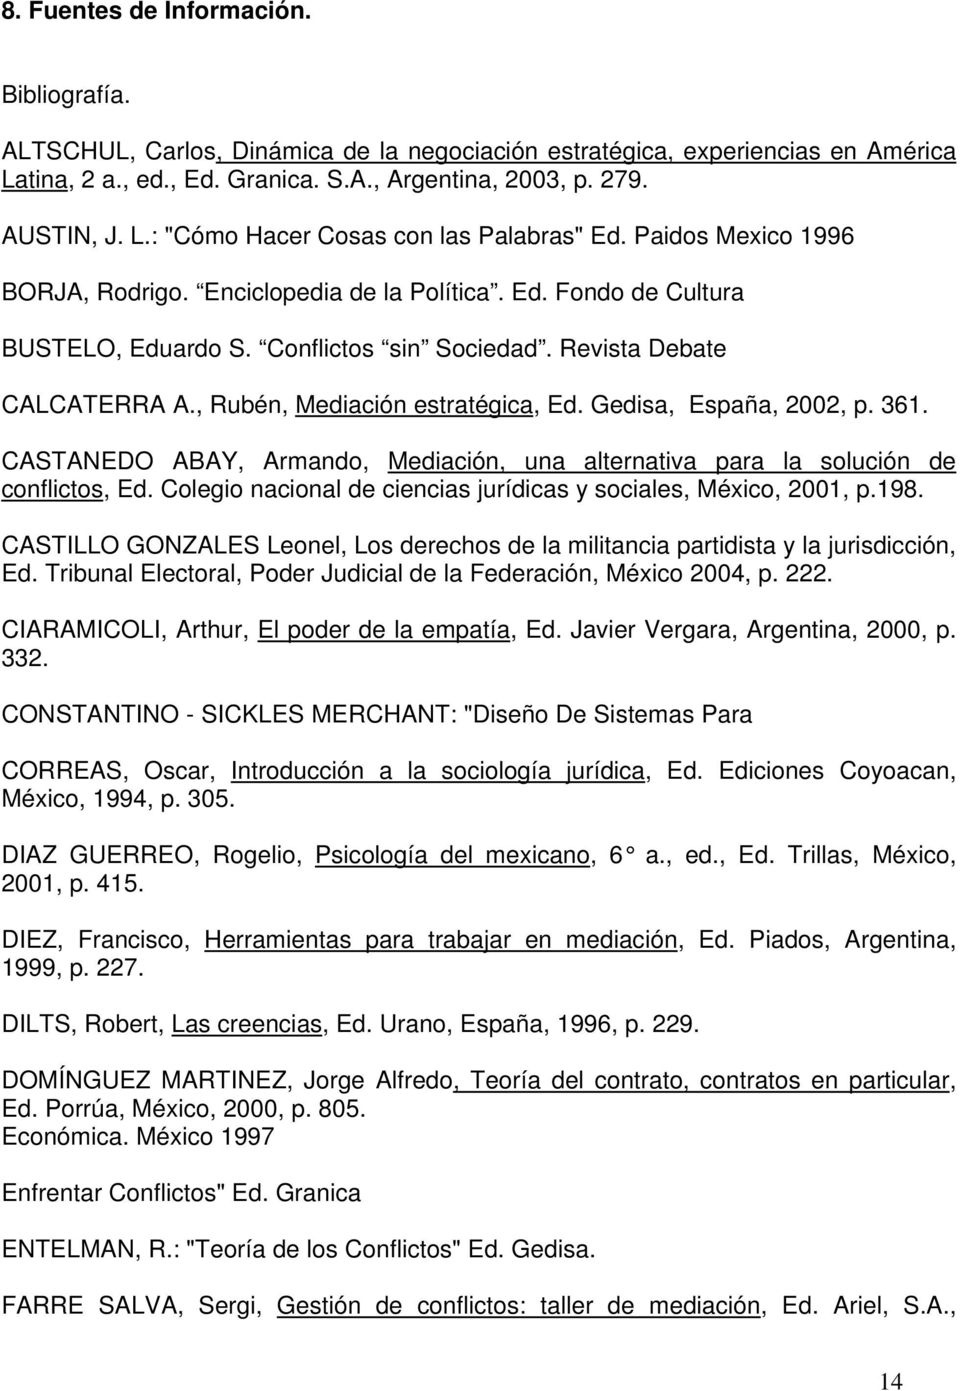 Gedisa, España, 2002, p. 361. CASTANEDO ABAY, Armando, Mediación, una alternativa para la solución de conflictos, Ed. Colegio nacional de ciencias jurídicas y sociales, México, 2001, p.198.